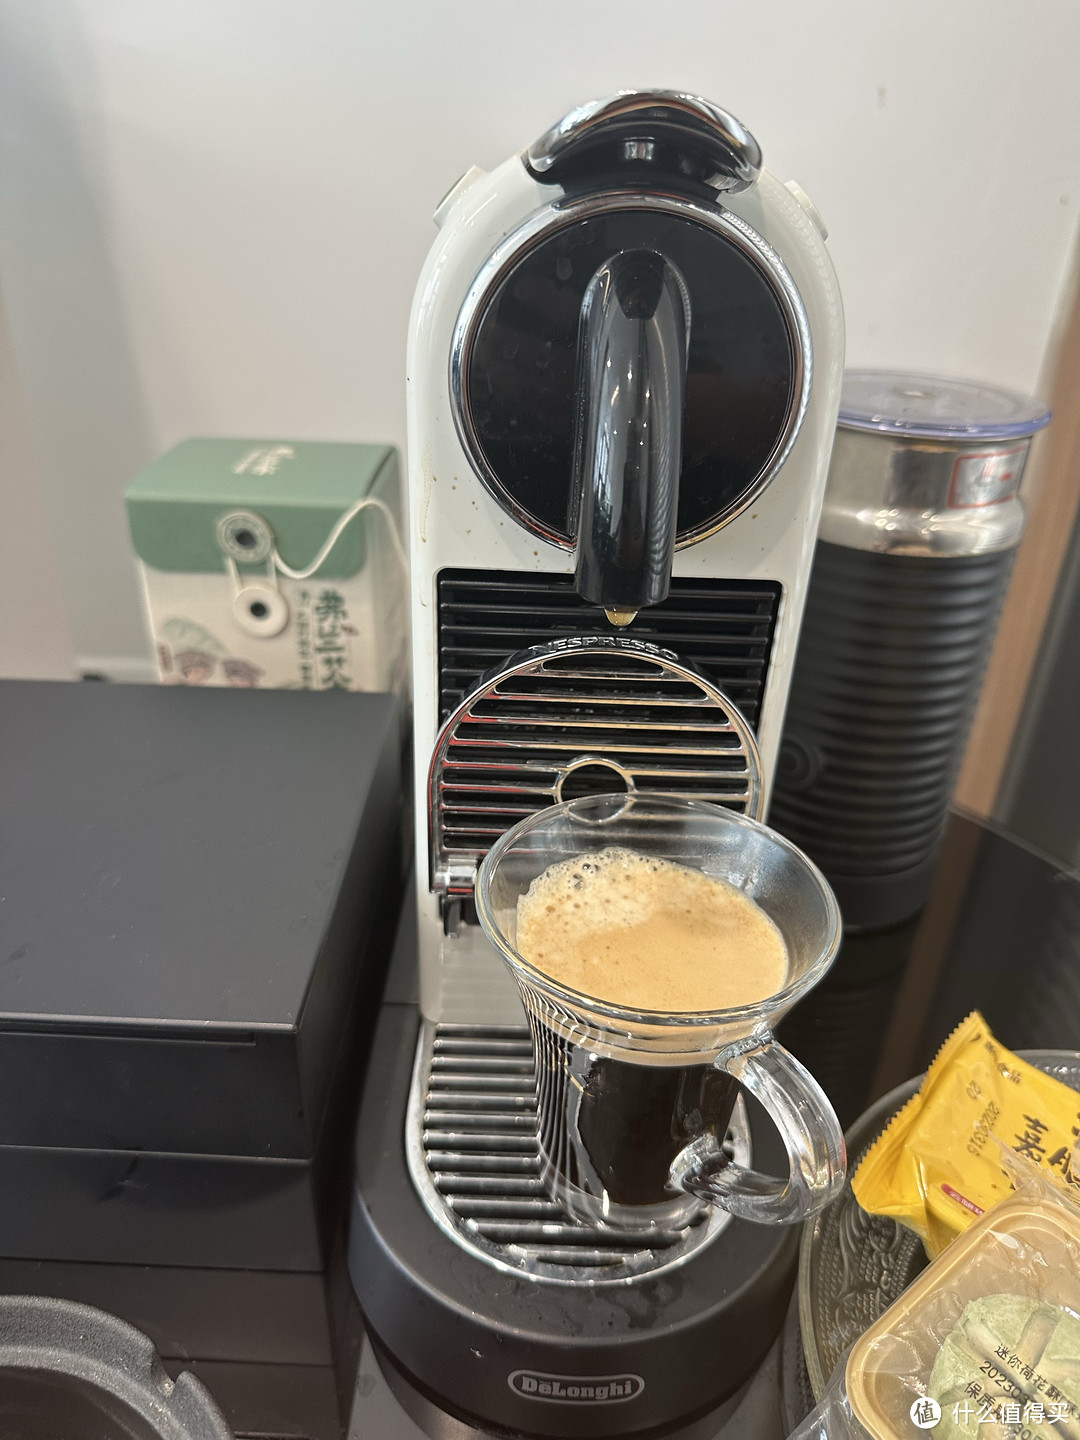 我的办公室咖啡装备-胶囊咖啡机+咖啡胶囊